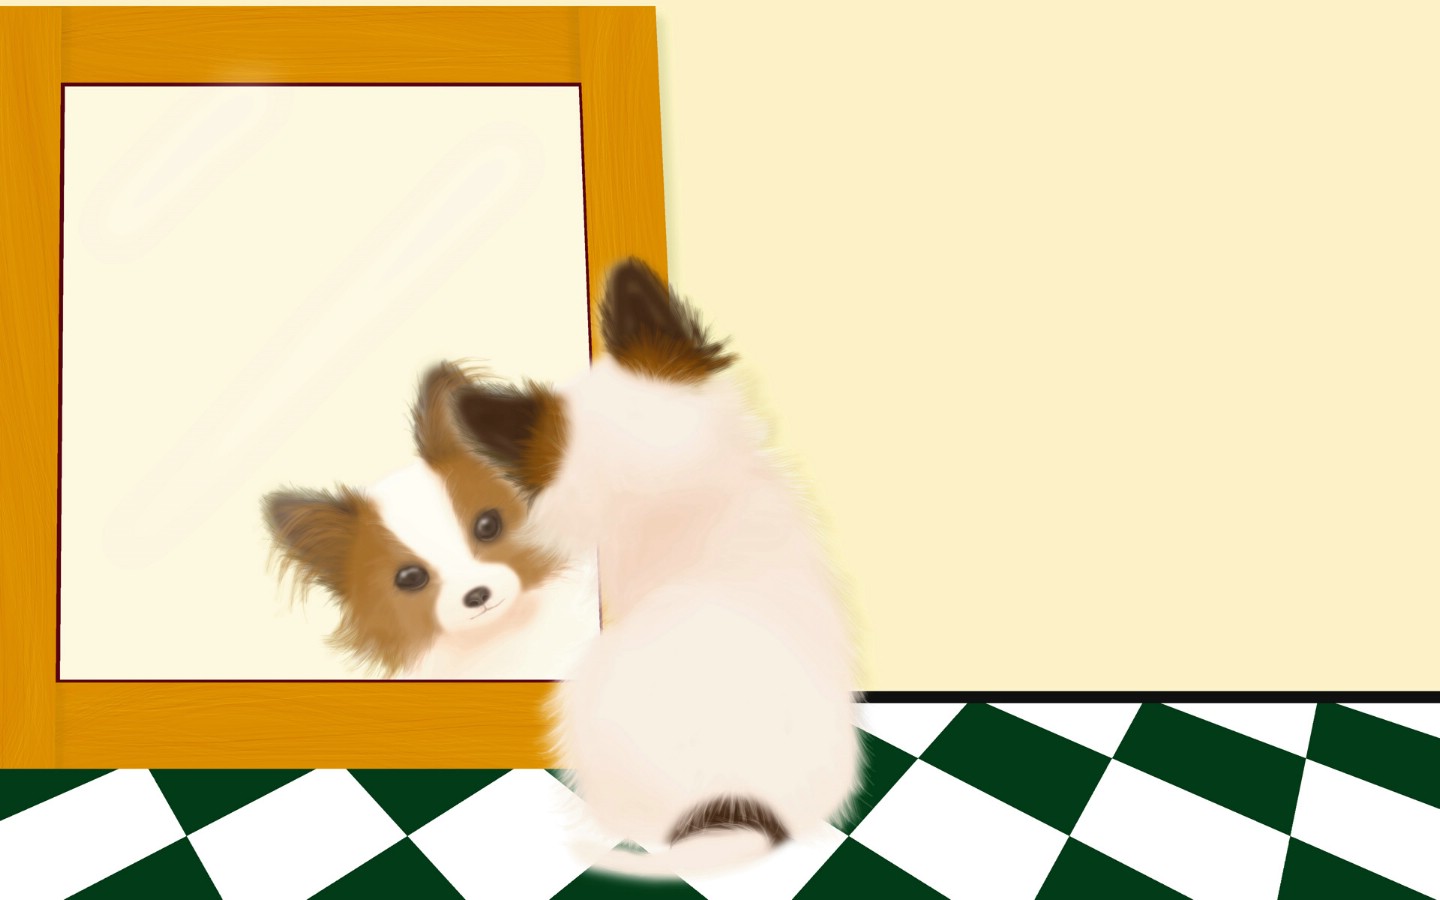 壁纸1440x900 狗狗照镜子 Painter 手绘小狗壁纸 Painter 柔和插画-我的宠物狗壁纸 Painter 柔和插画-我的宠物狗图片 Painter 柔和插画-我的宠物狗素材 动物壁纸 动物图库 动物图片素材桌面壁纸